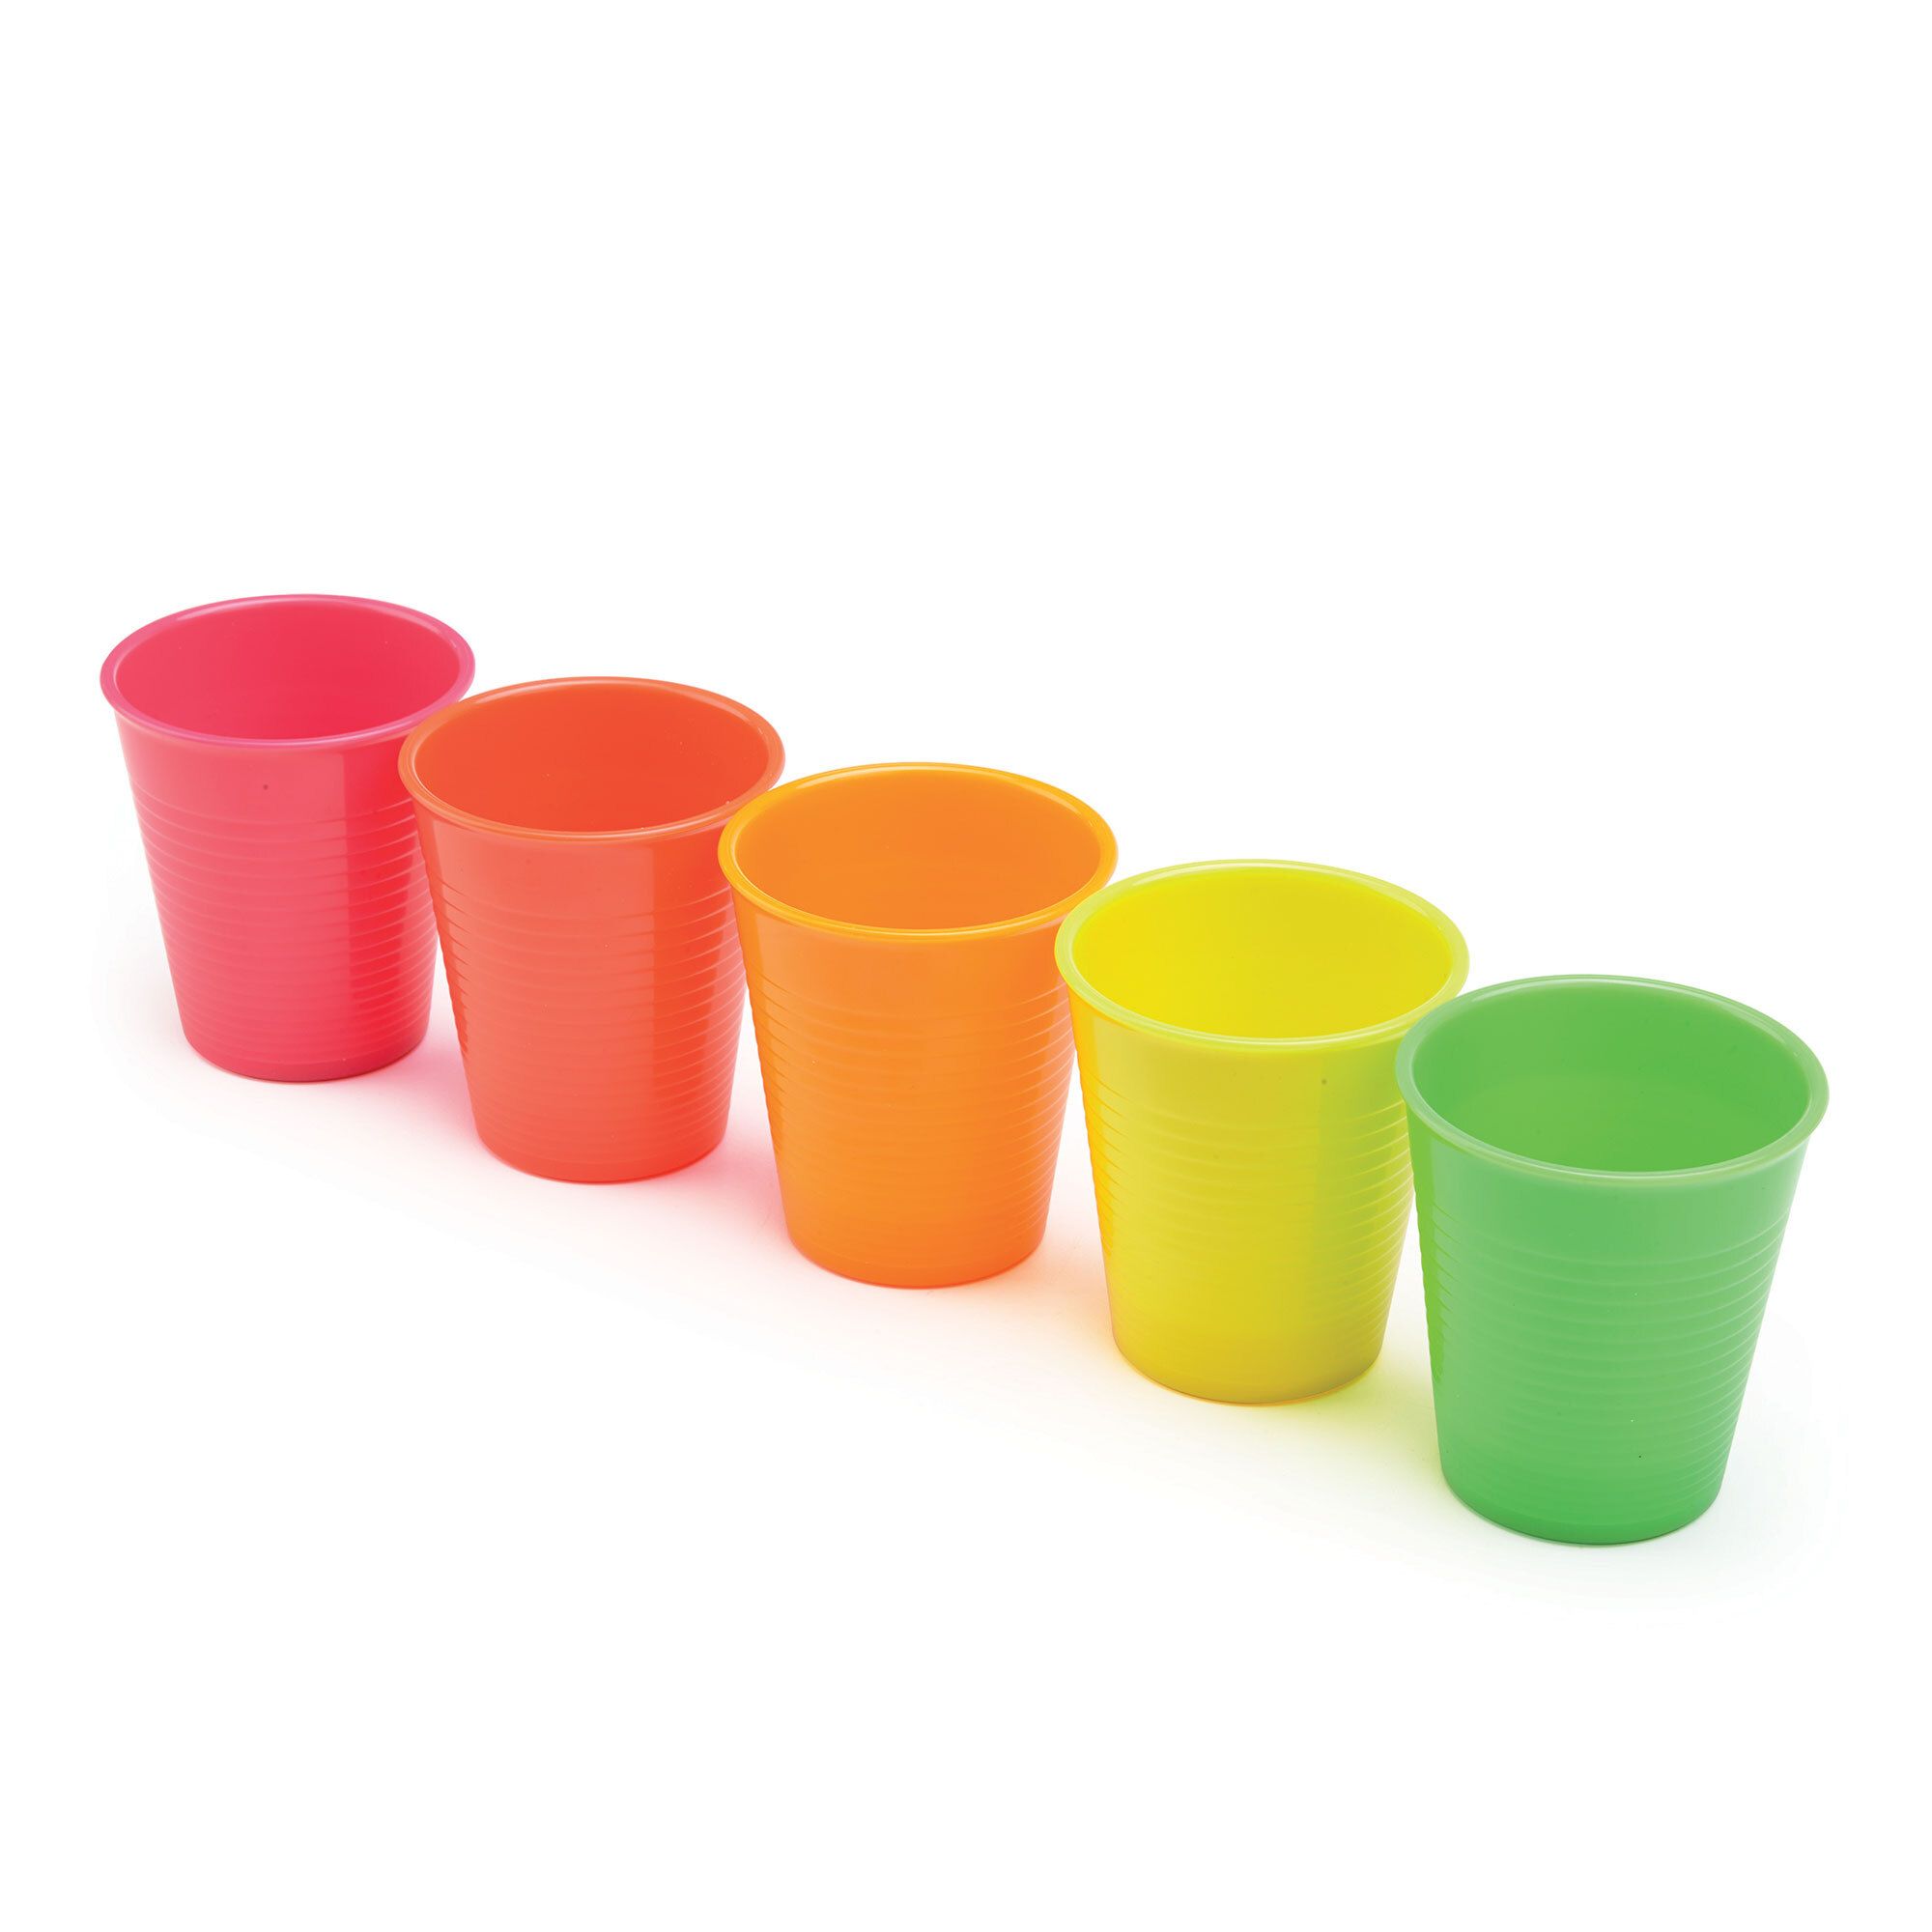 Image of 5 bicchieri colorati